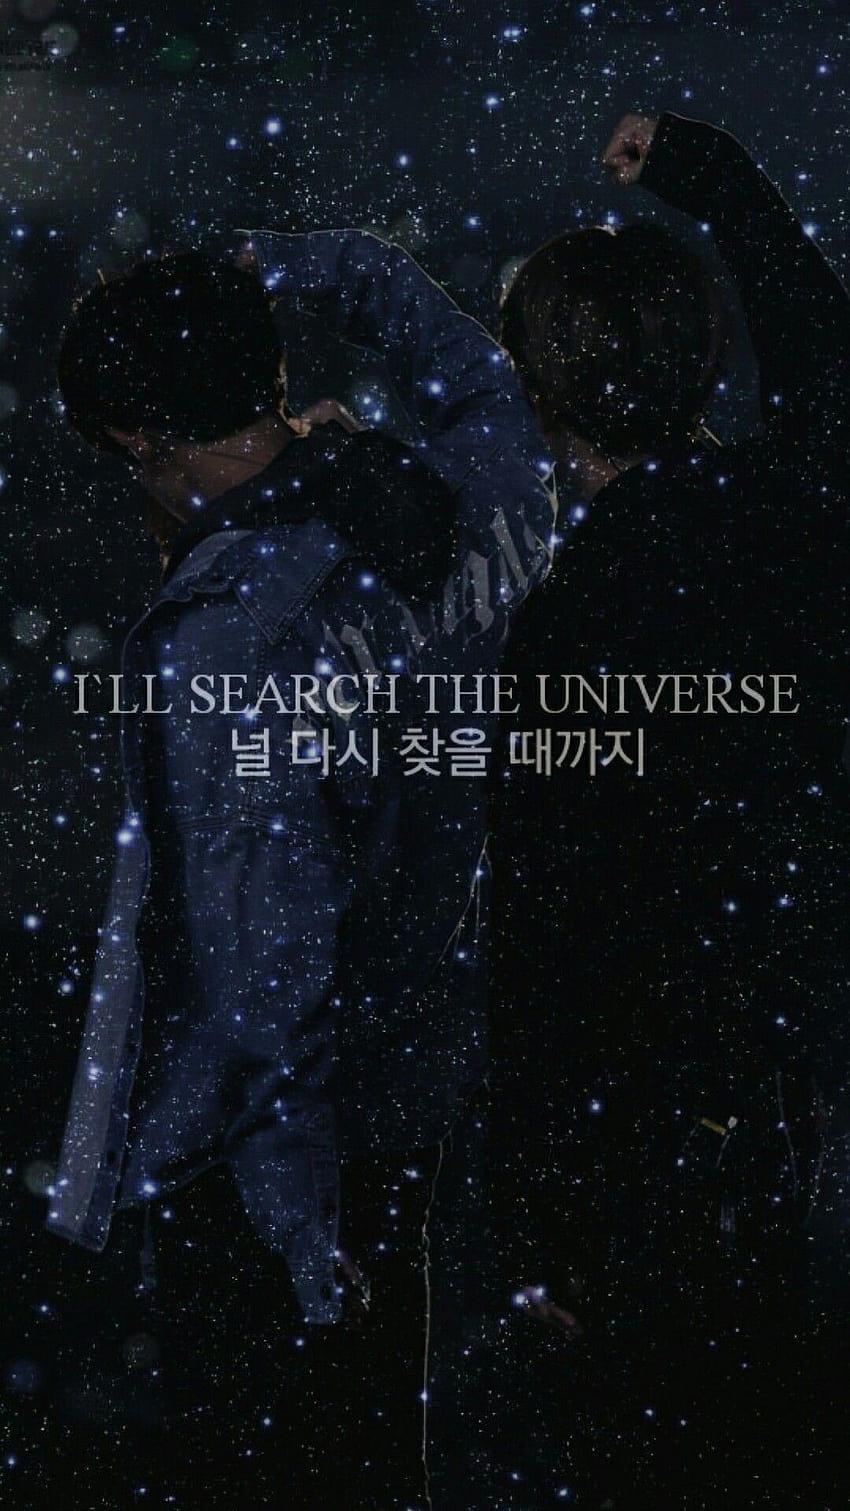 CHANBAEK ~ BAEKYEOL EXO, ill search the universe HD phone wallpaper